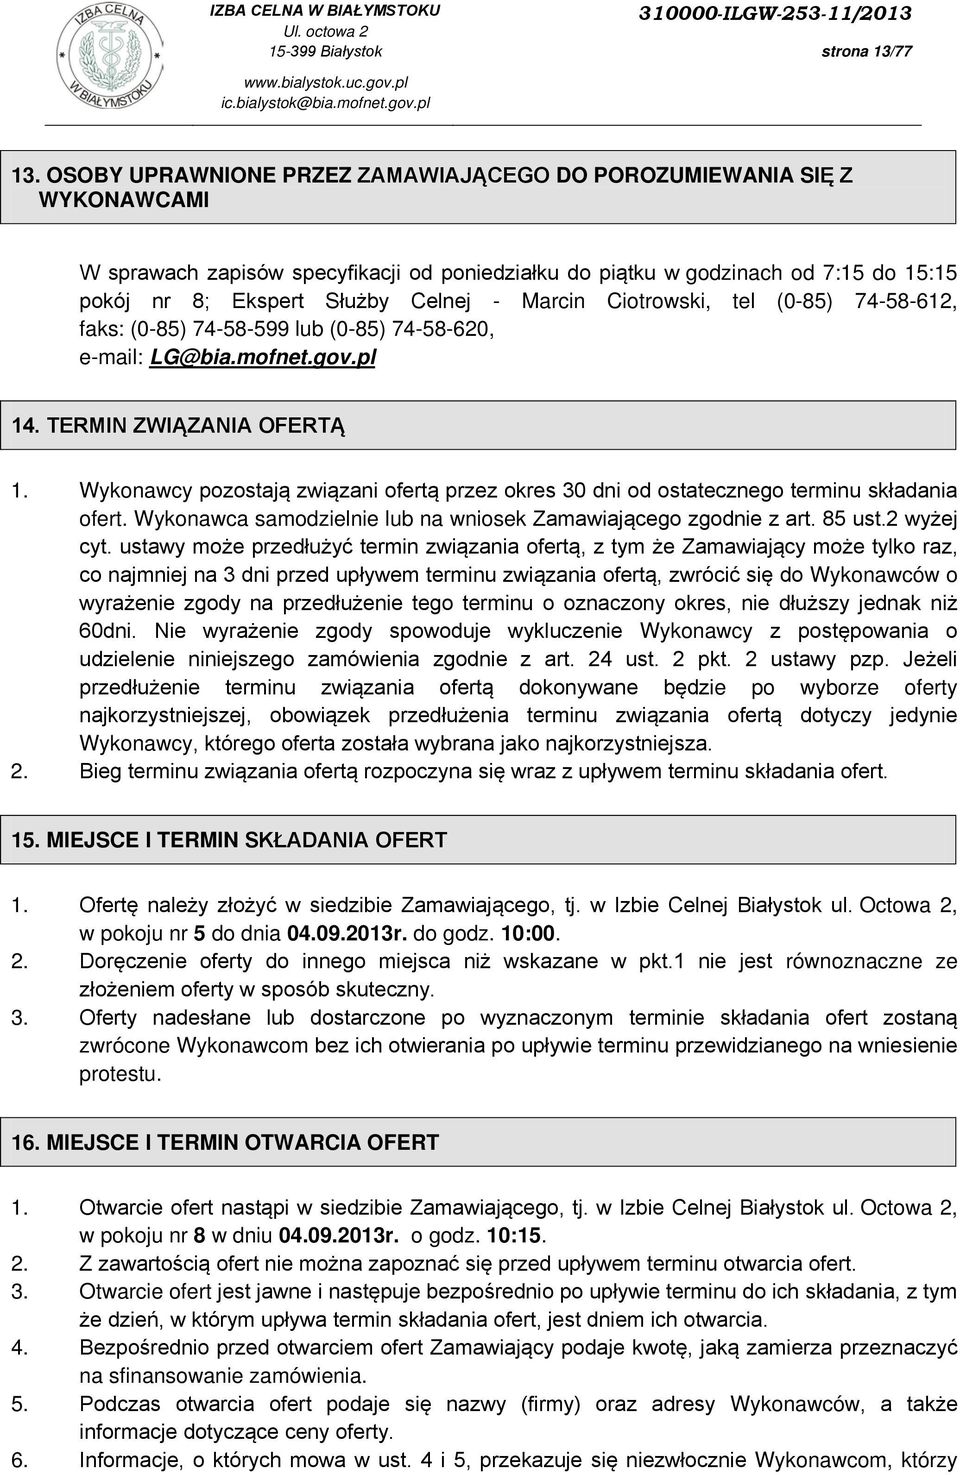 Marcin Ciotrowski, tel (0-85) 74-58-612, faks: (0-85) 74-58-599 lub (0-85) 74-58-620, e-mail: LG@bia.mofnet.gov.pl 14. TERMIN ZWIĄZANIA OFERTĄ 1.